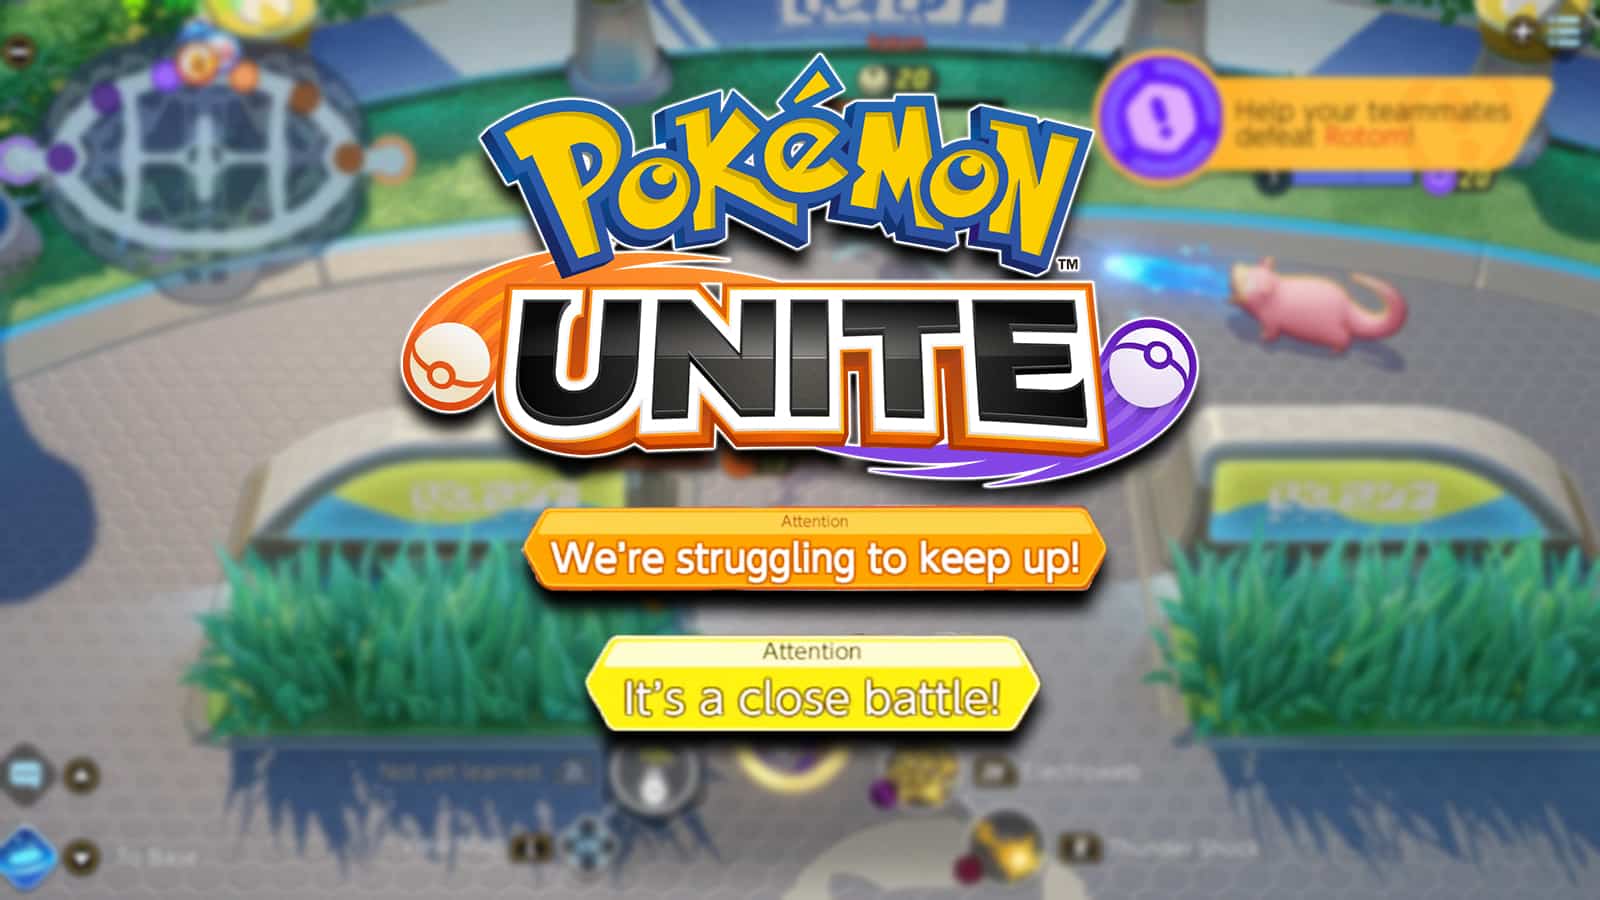 Pokemon Unite score alert messages